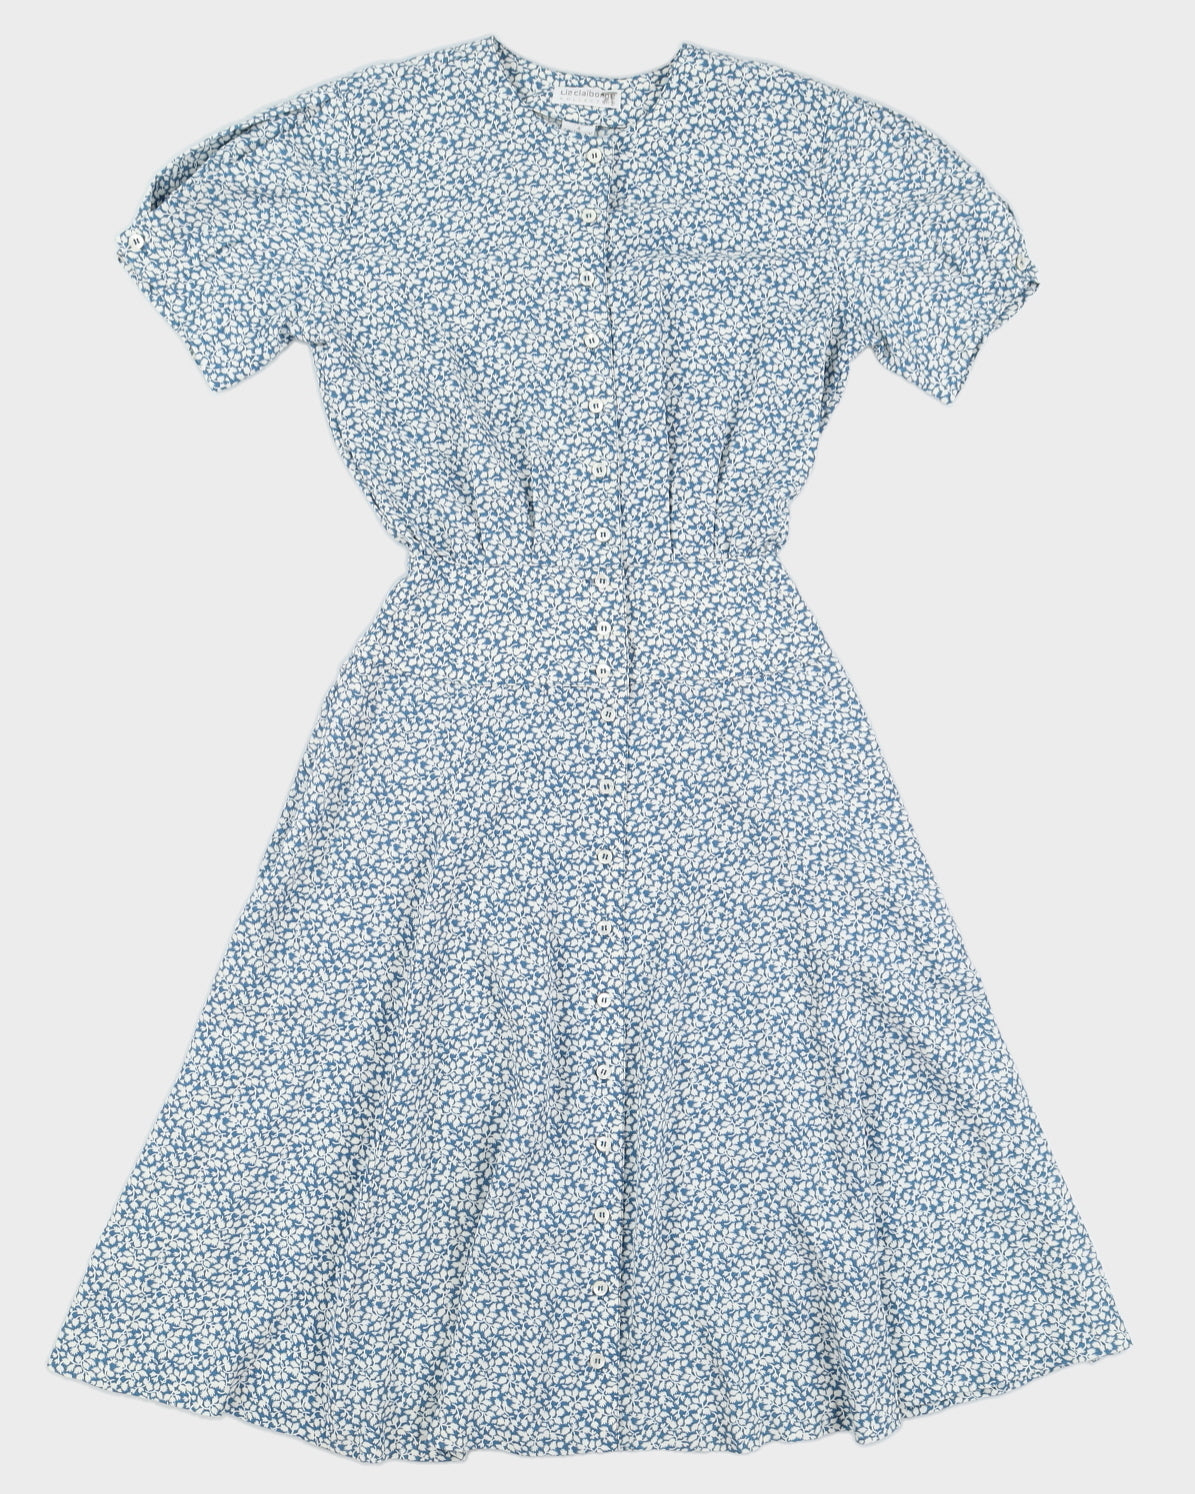 Vintage 90s Liz Claiborne Blue & White Floral Button Down Dress - M